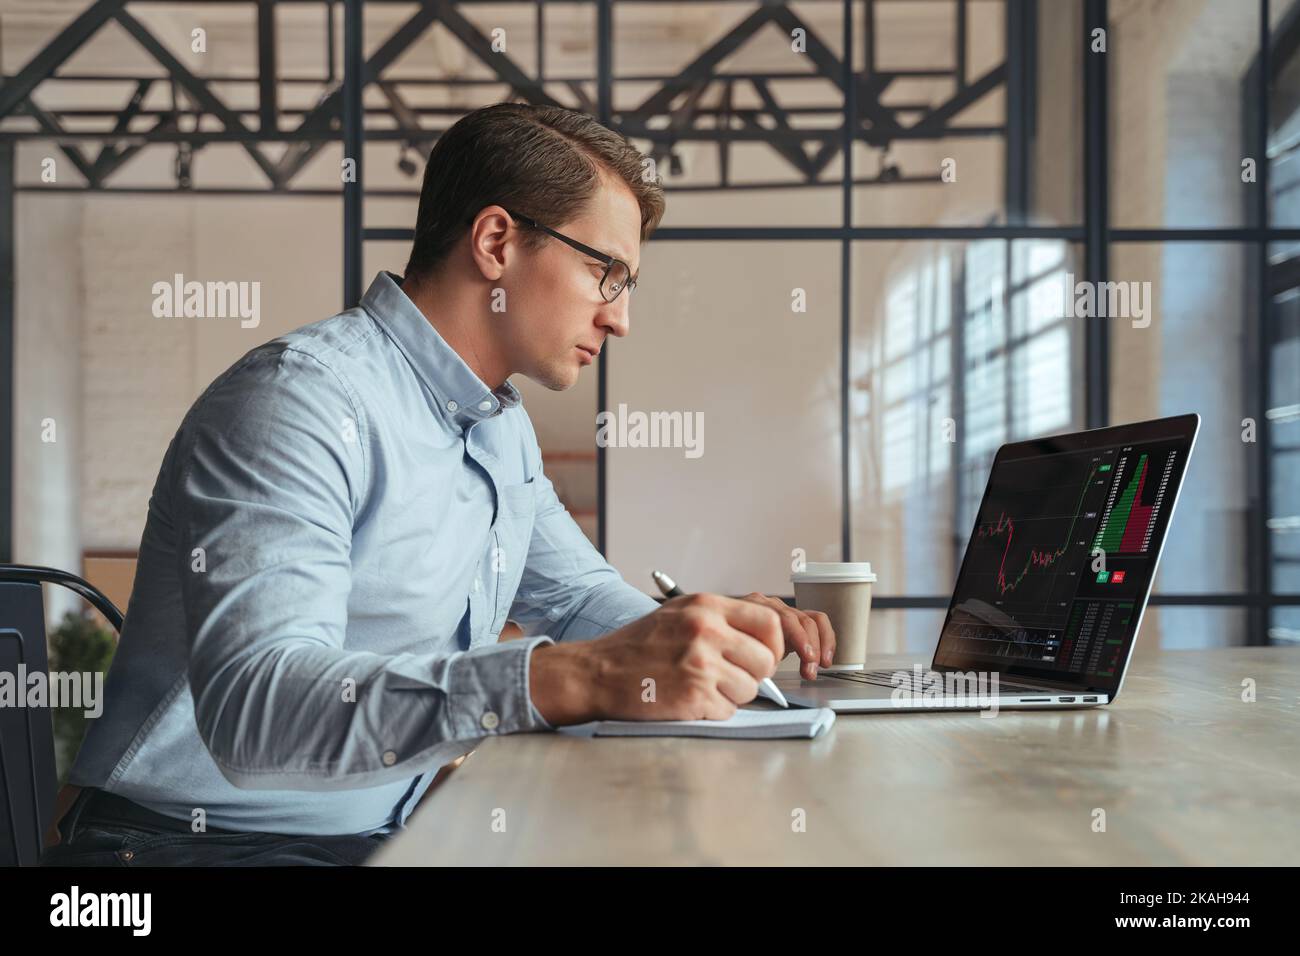 Homme occupé commerçant de lunettes travaillant en ligne sur ordinateur portable à son bureau, crypto-expert financier analyse graphique regardant l'écran de moniteur avec le diagramme, écrivant dans le bloc-notes. Crypto-monnaie Banque D'Images